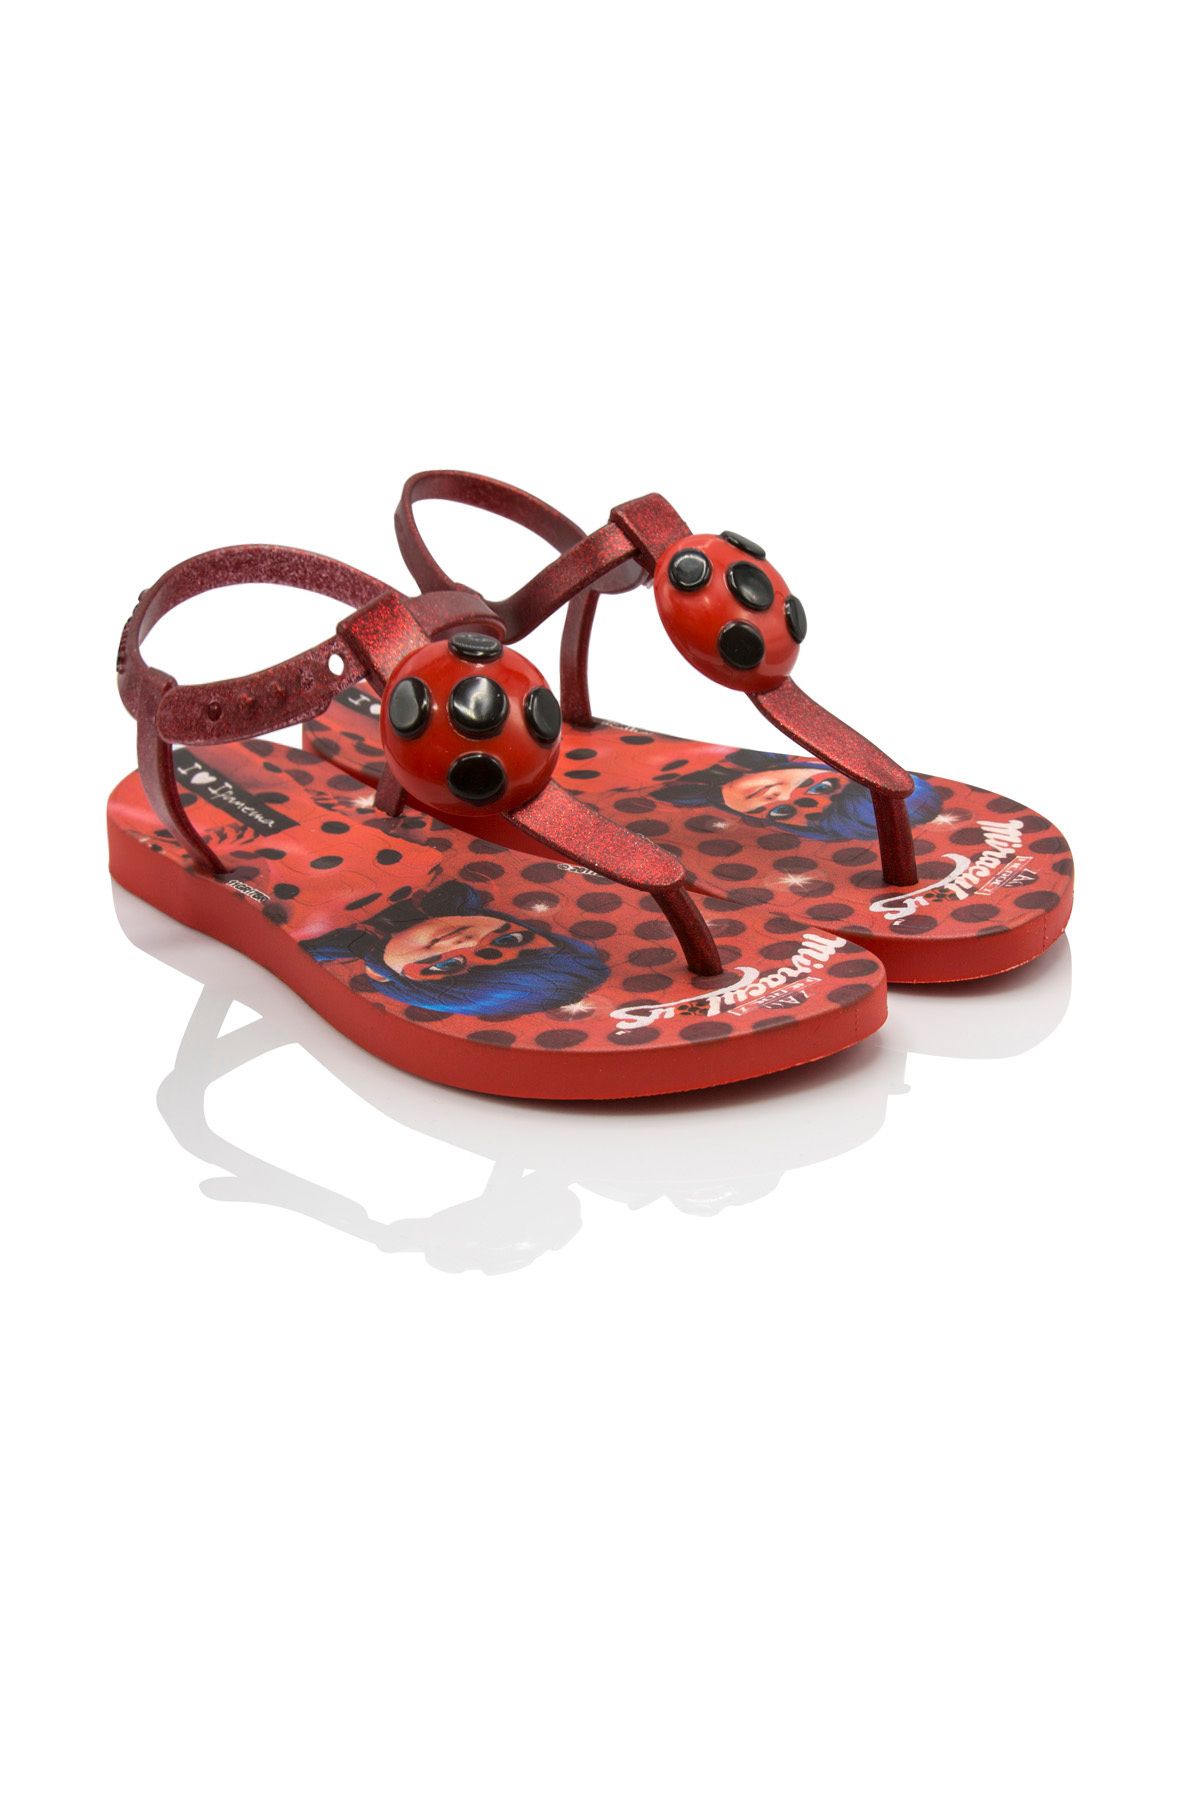 İpanema Ip Ladybug Kırmızı Çocuk Sandalet